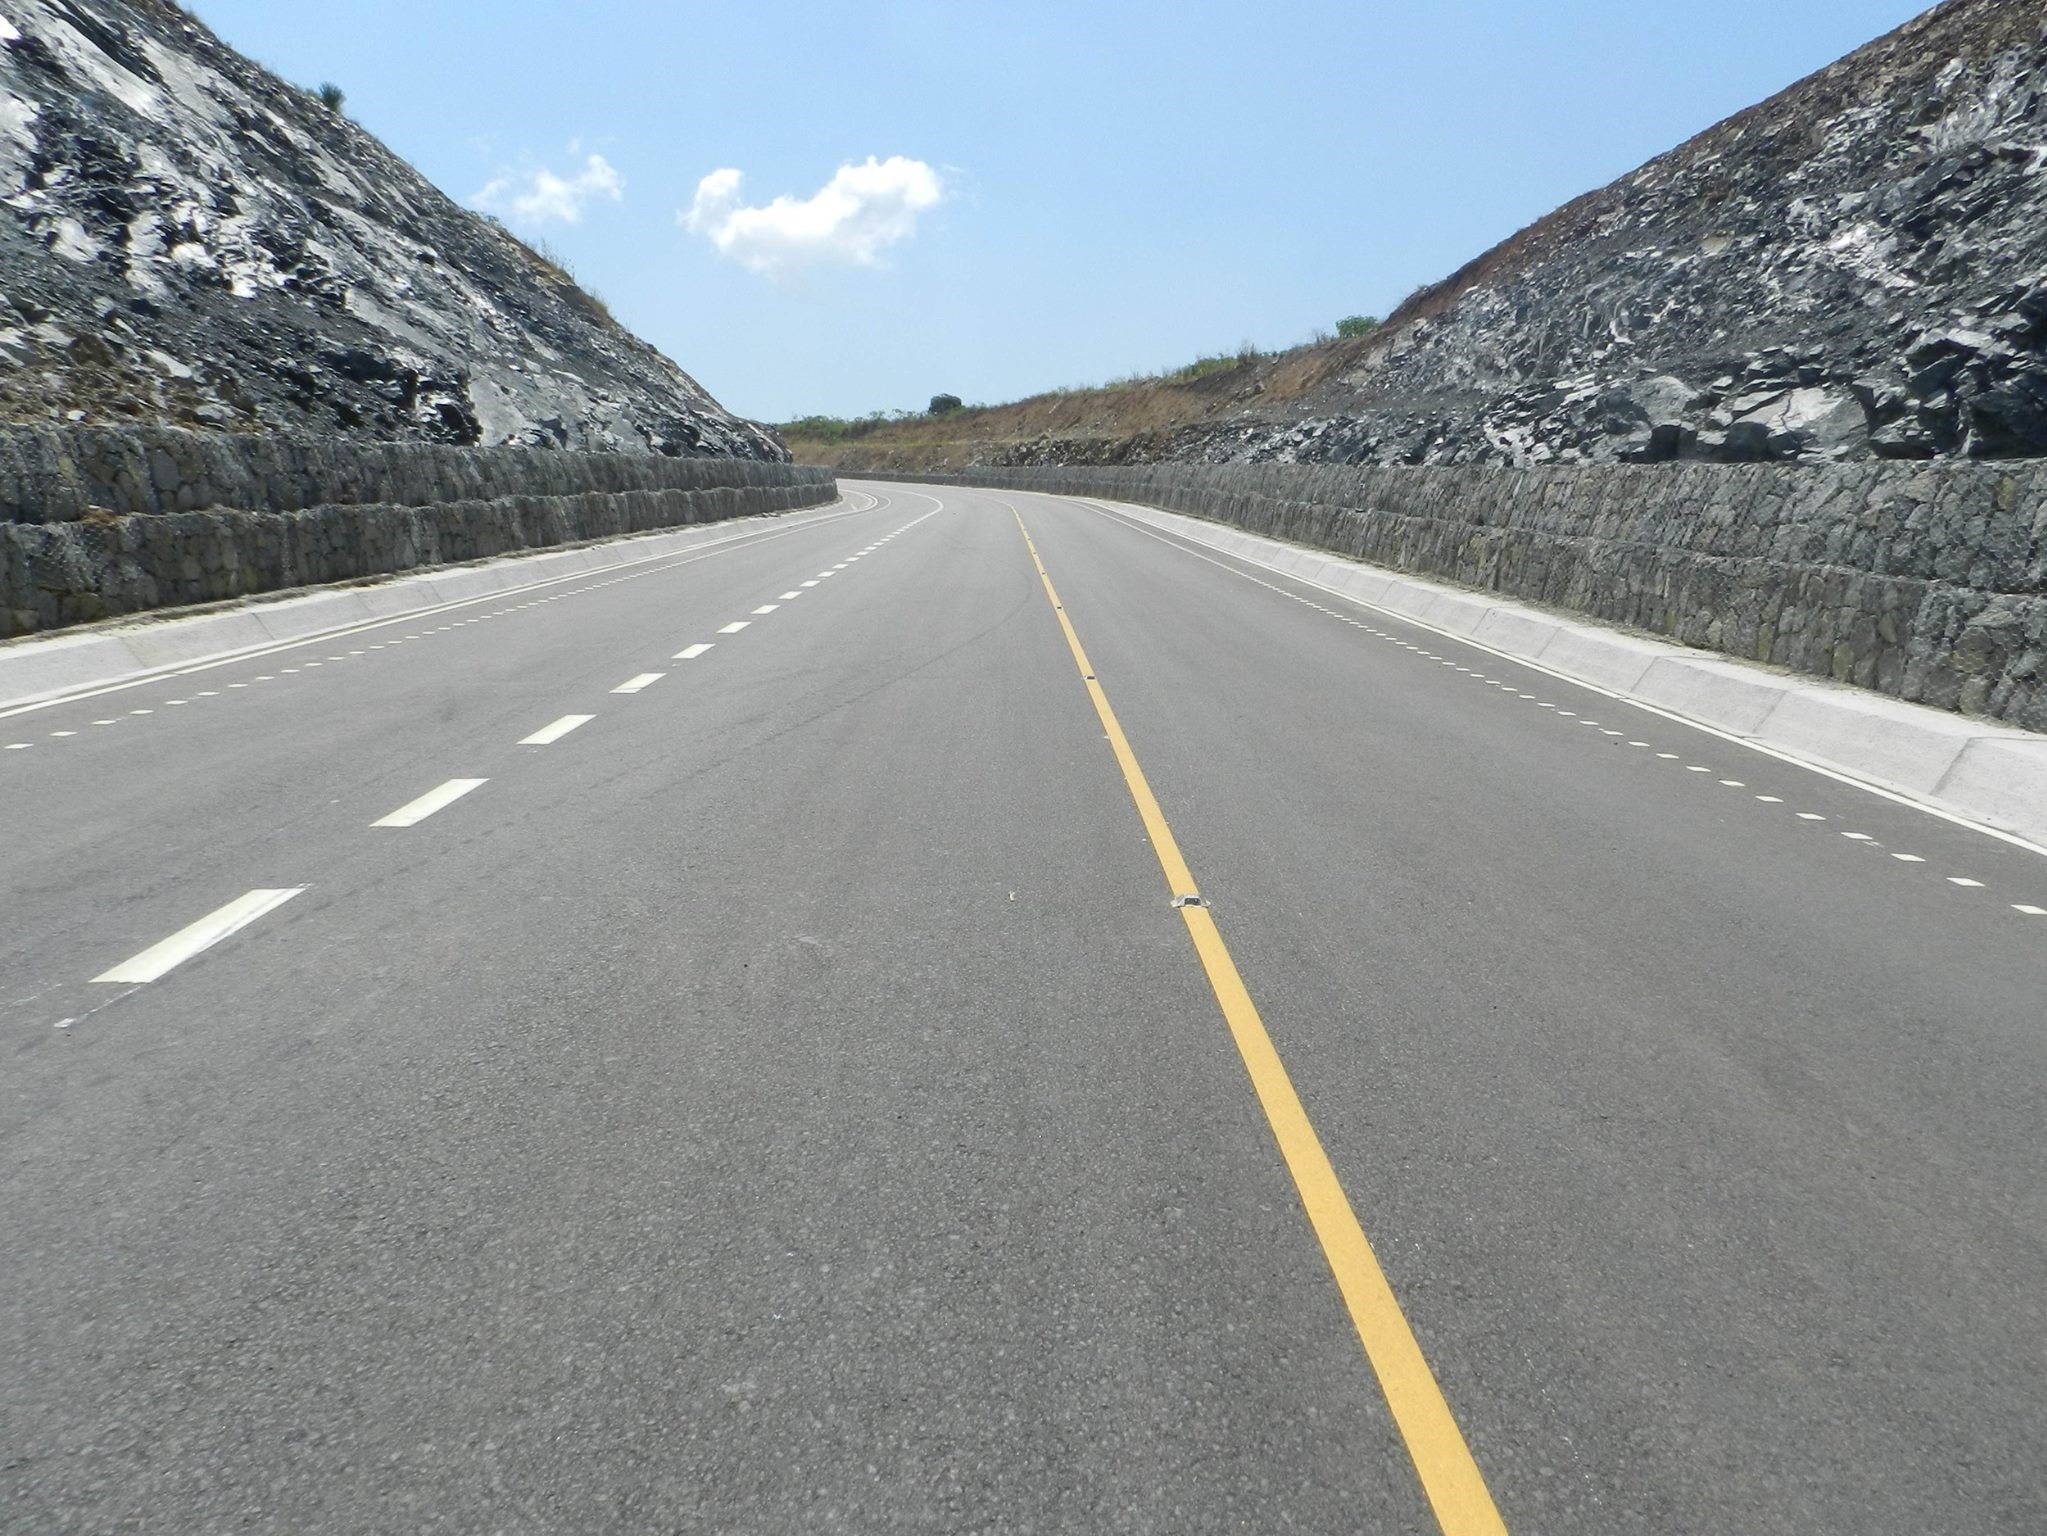 Business executives give Ugandan roads average rating